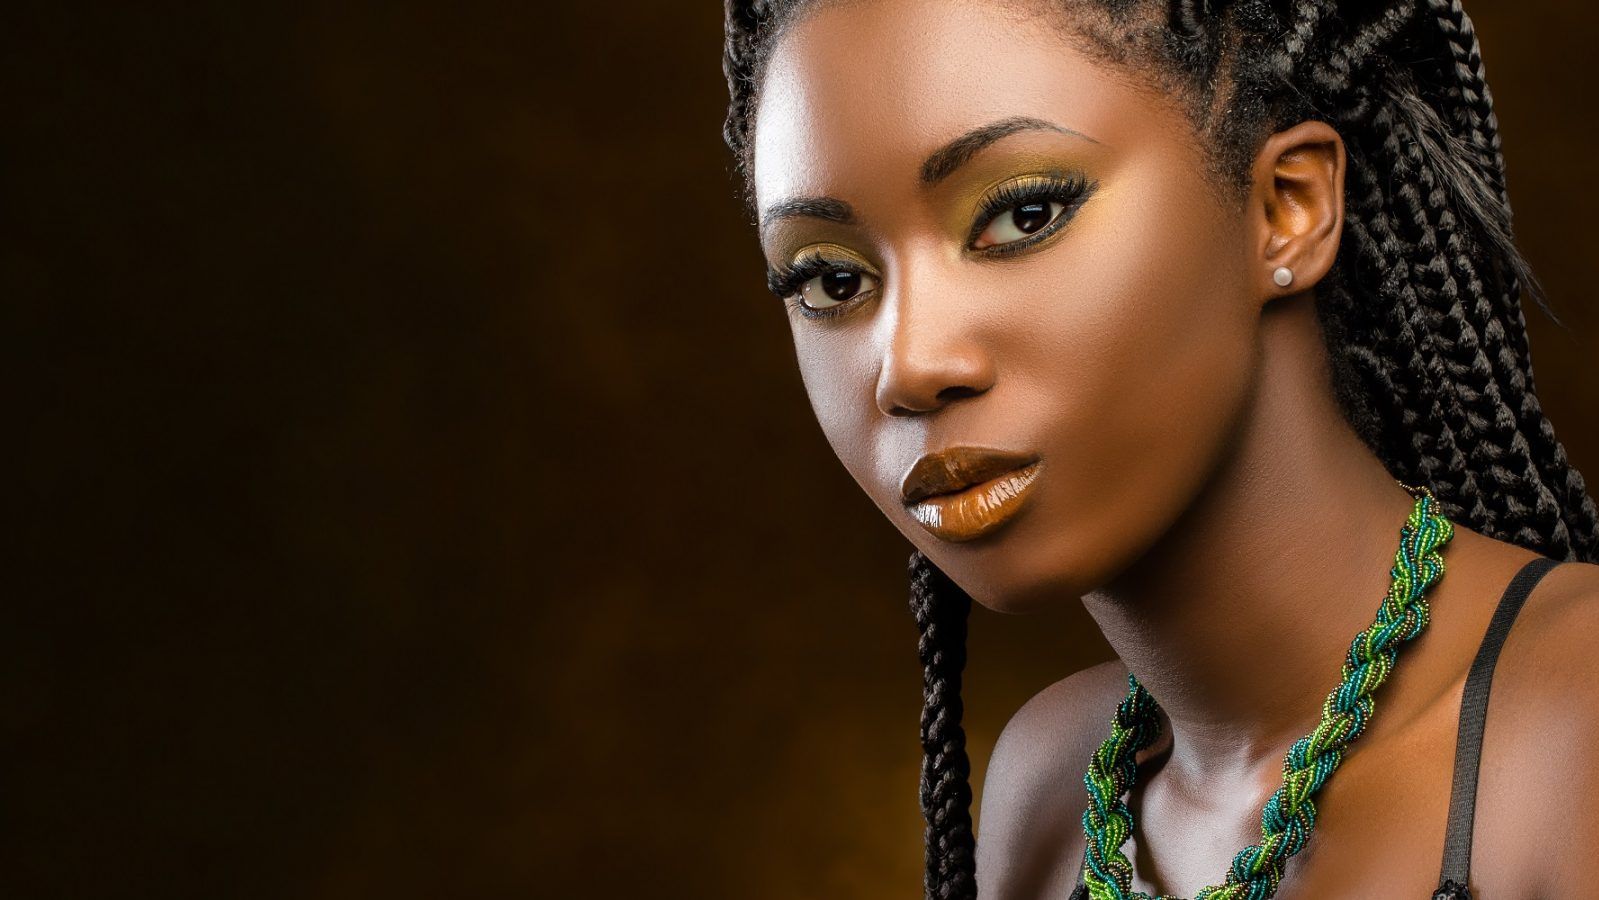 有非洲的发型的黑人妇女 库存照片. 图片 包括有 大使, 结算, 化妆用品, 逗人喜爱, 理想, 完美, 现有量 - 40293002